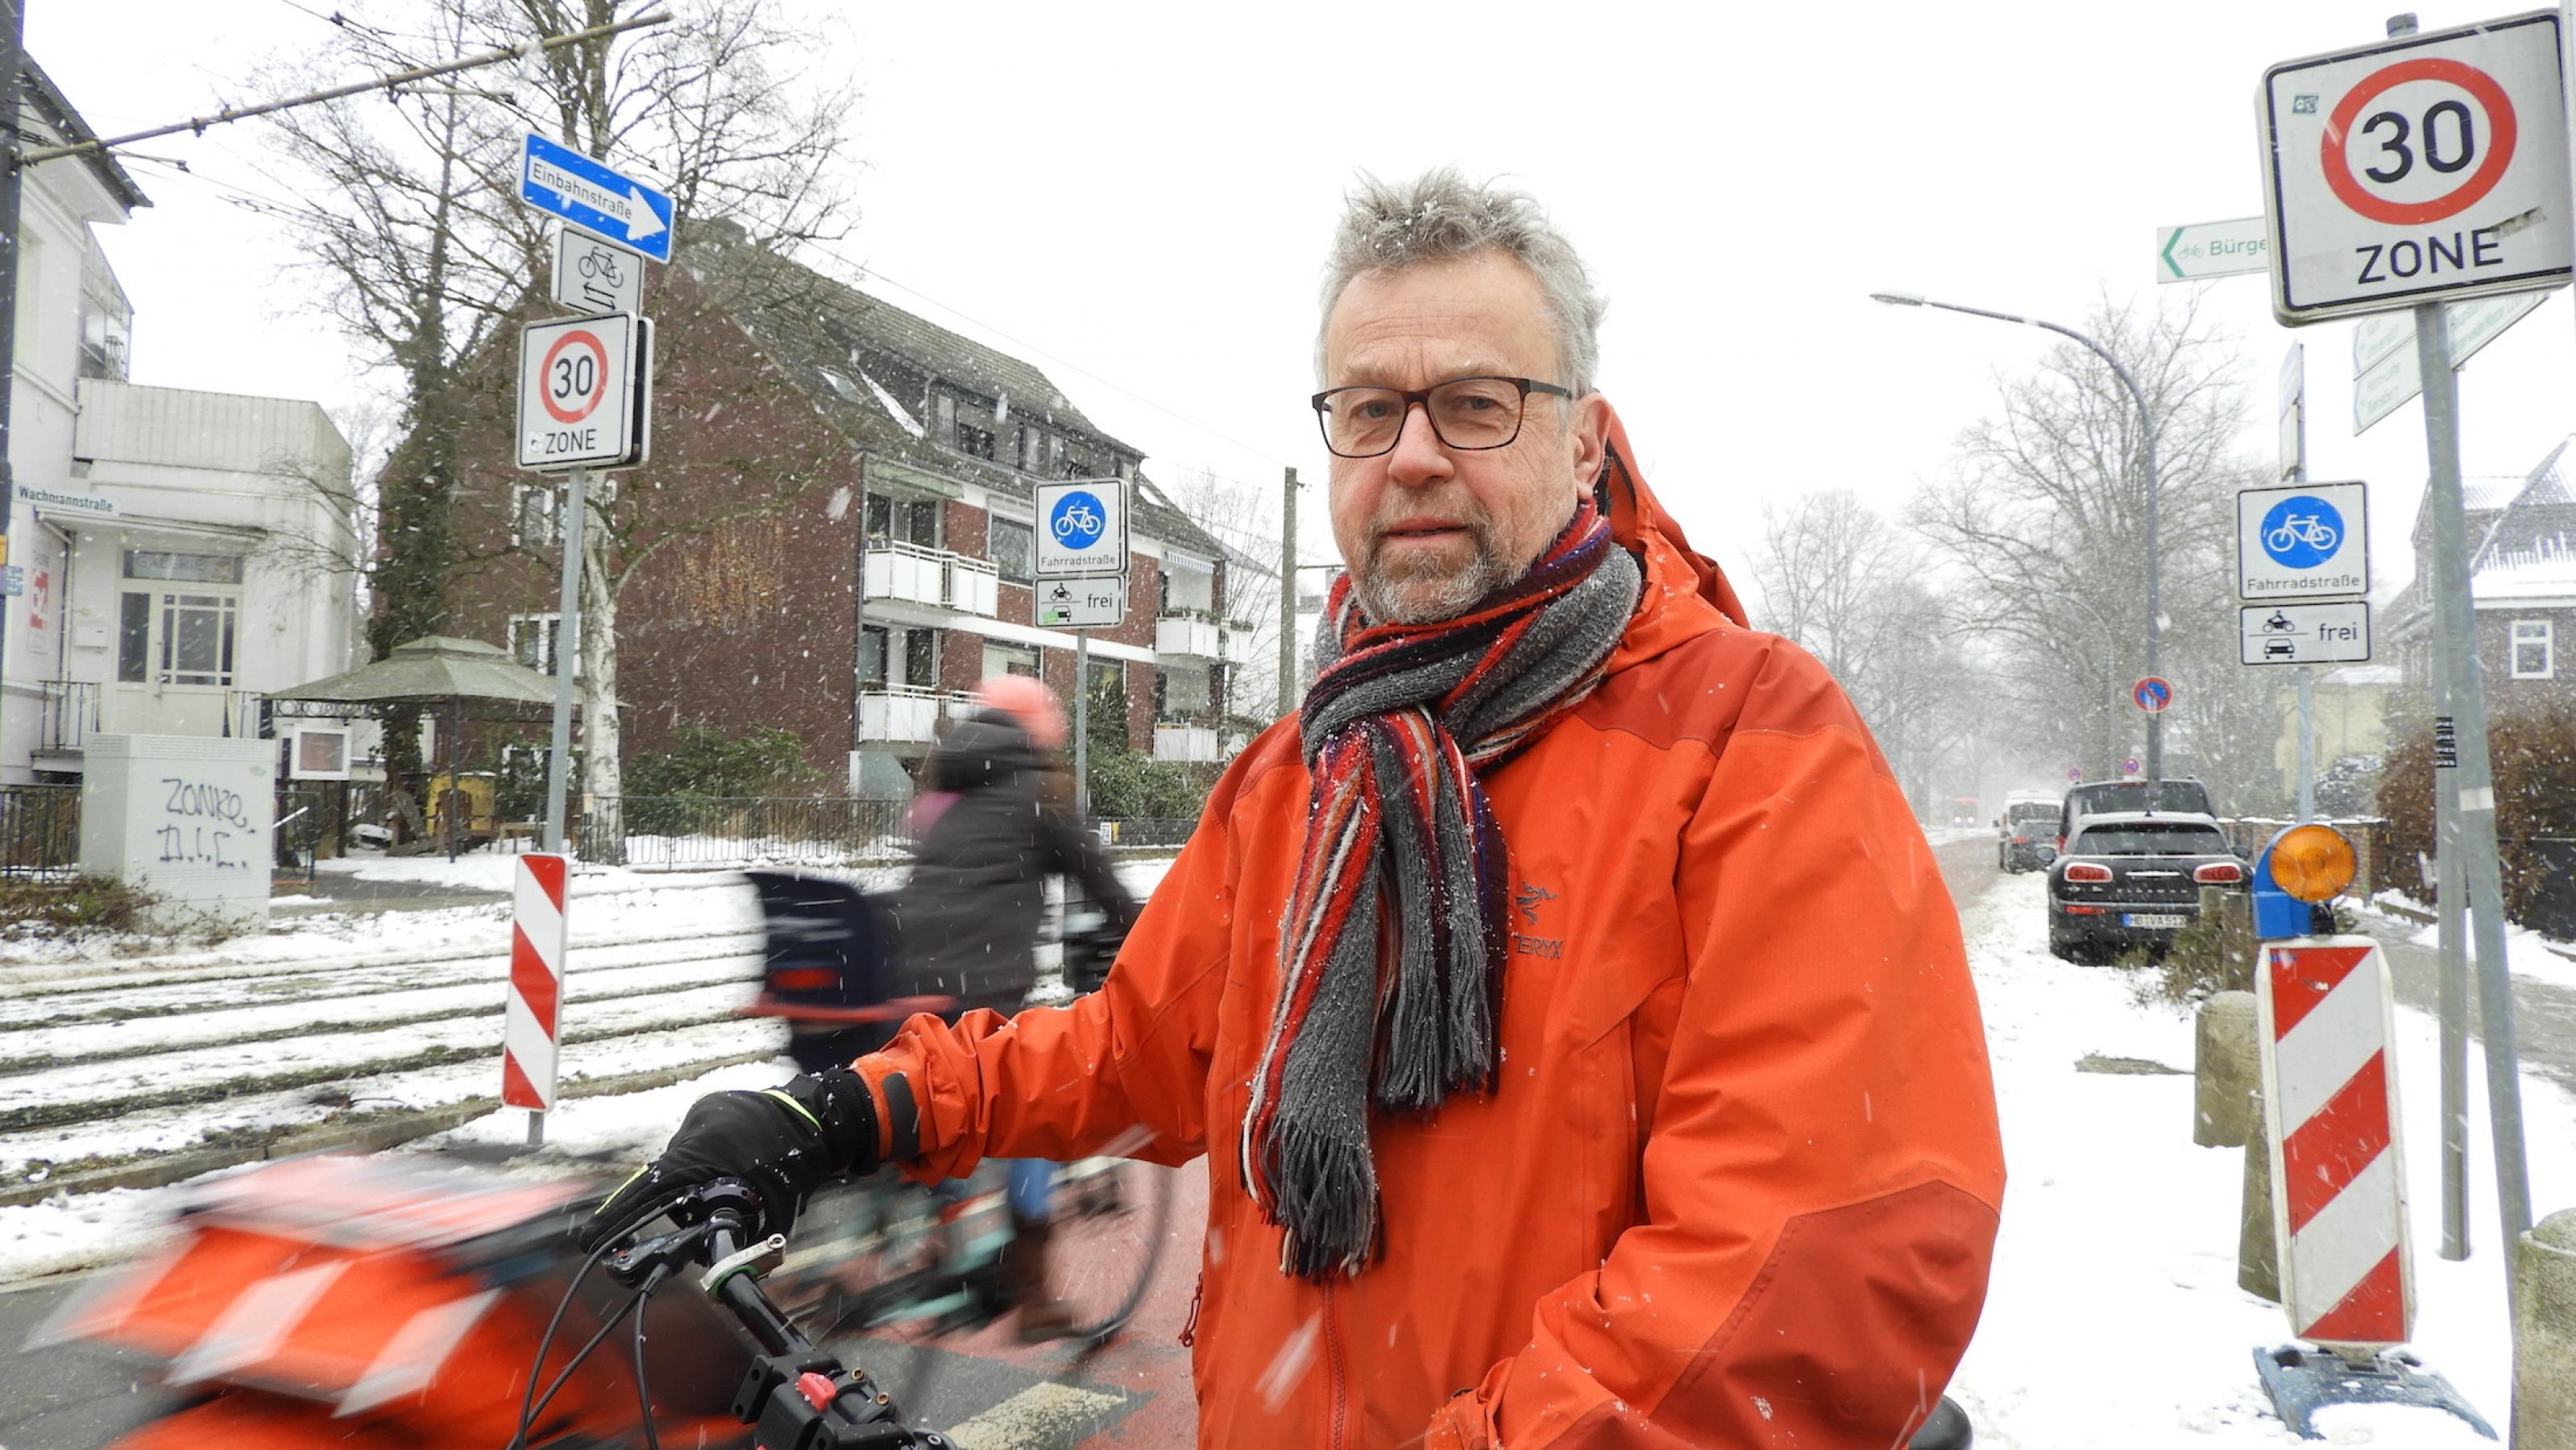 Michael Glotz-Richter steht vor einer Fahrradstraße. Er trägt eine rote Jacke und hat graue lockige Haare, einen Bart und trägt eine Brille